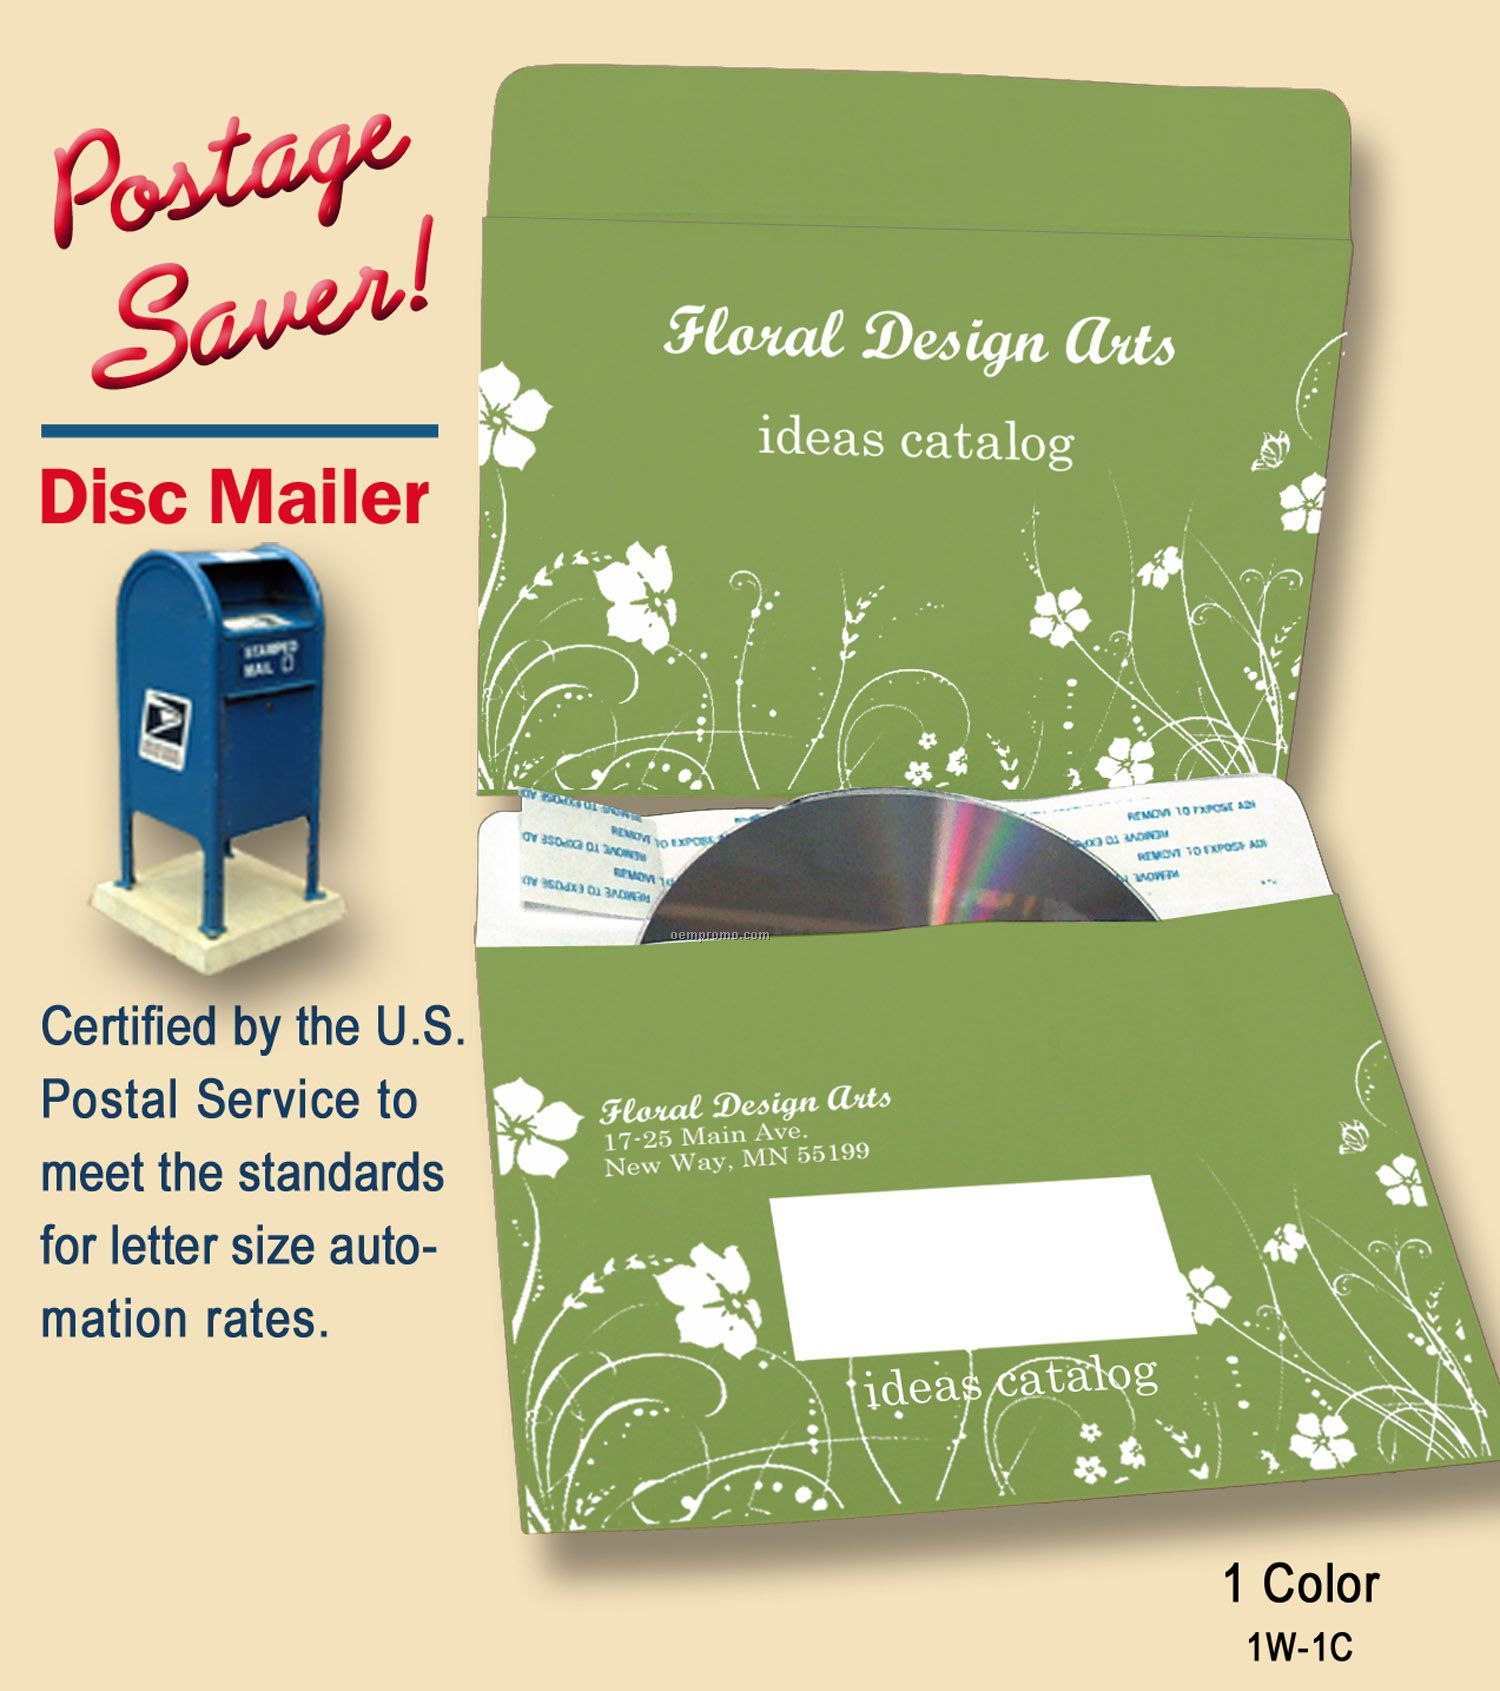 Postage Saver Disc Mailer,1 Color Imprint